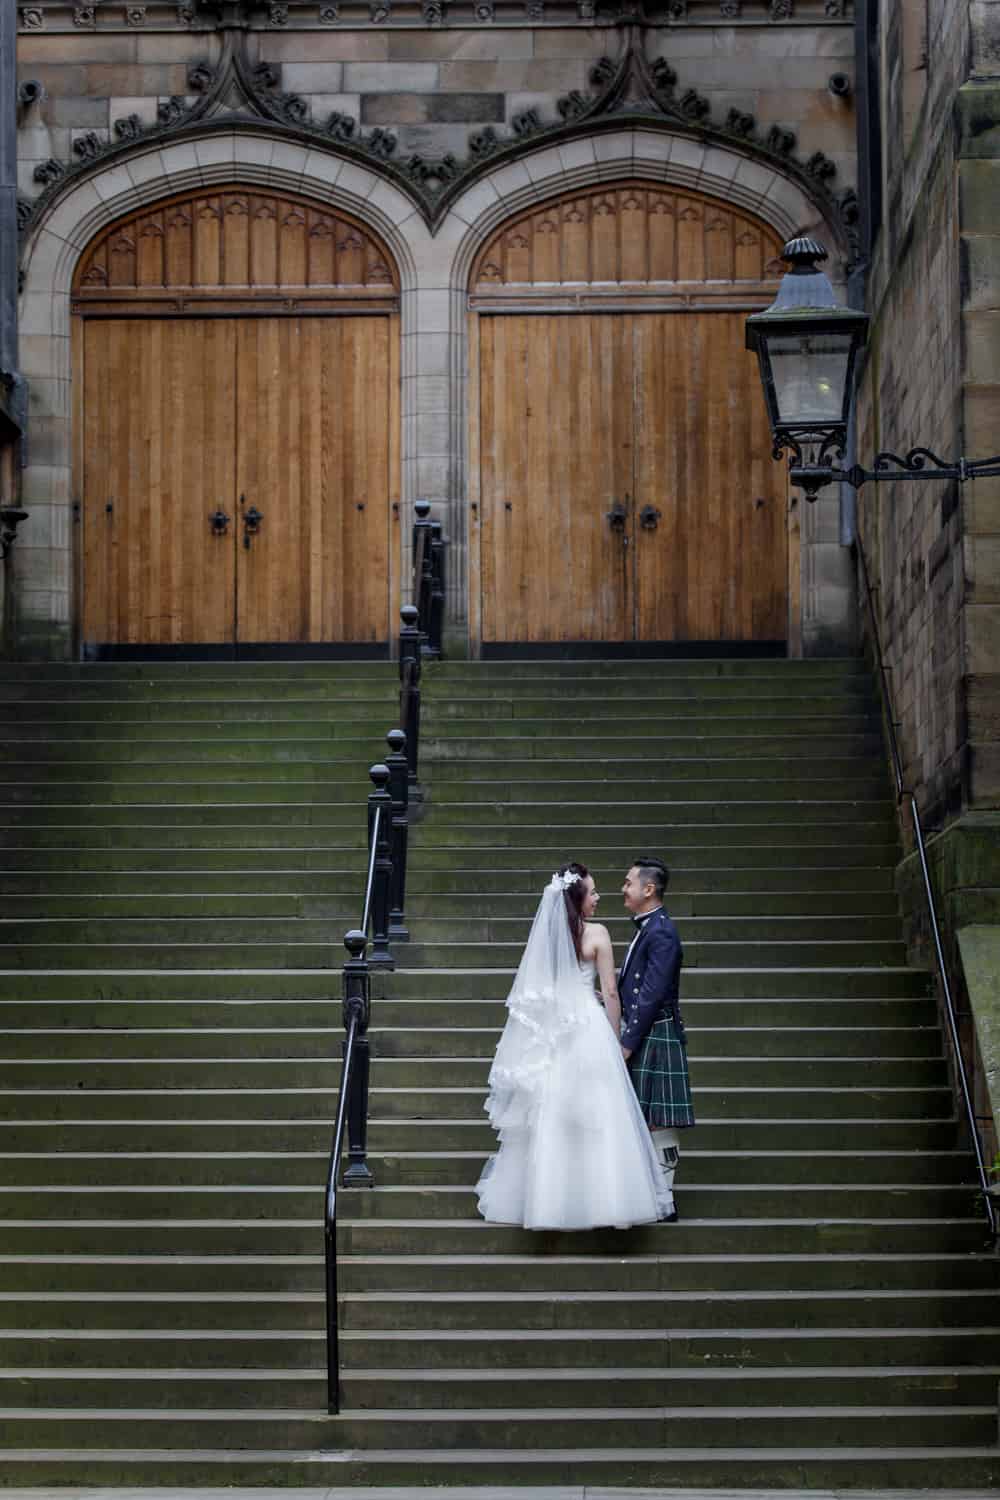 Top romantic places to propose in Edinburgh. 52